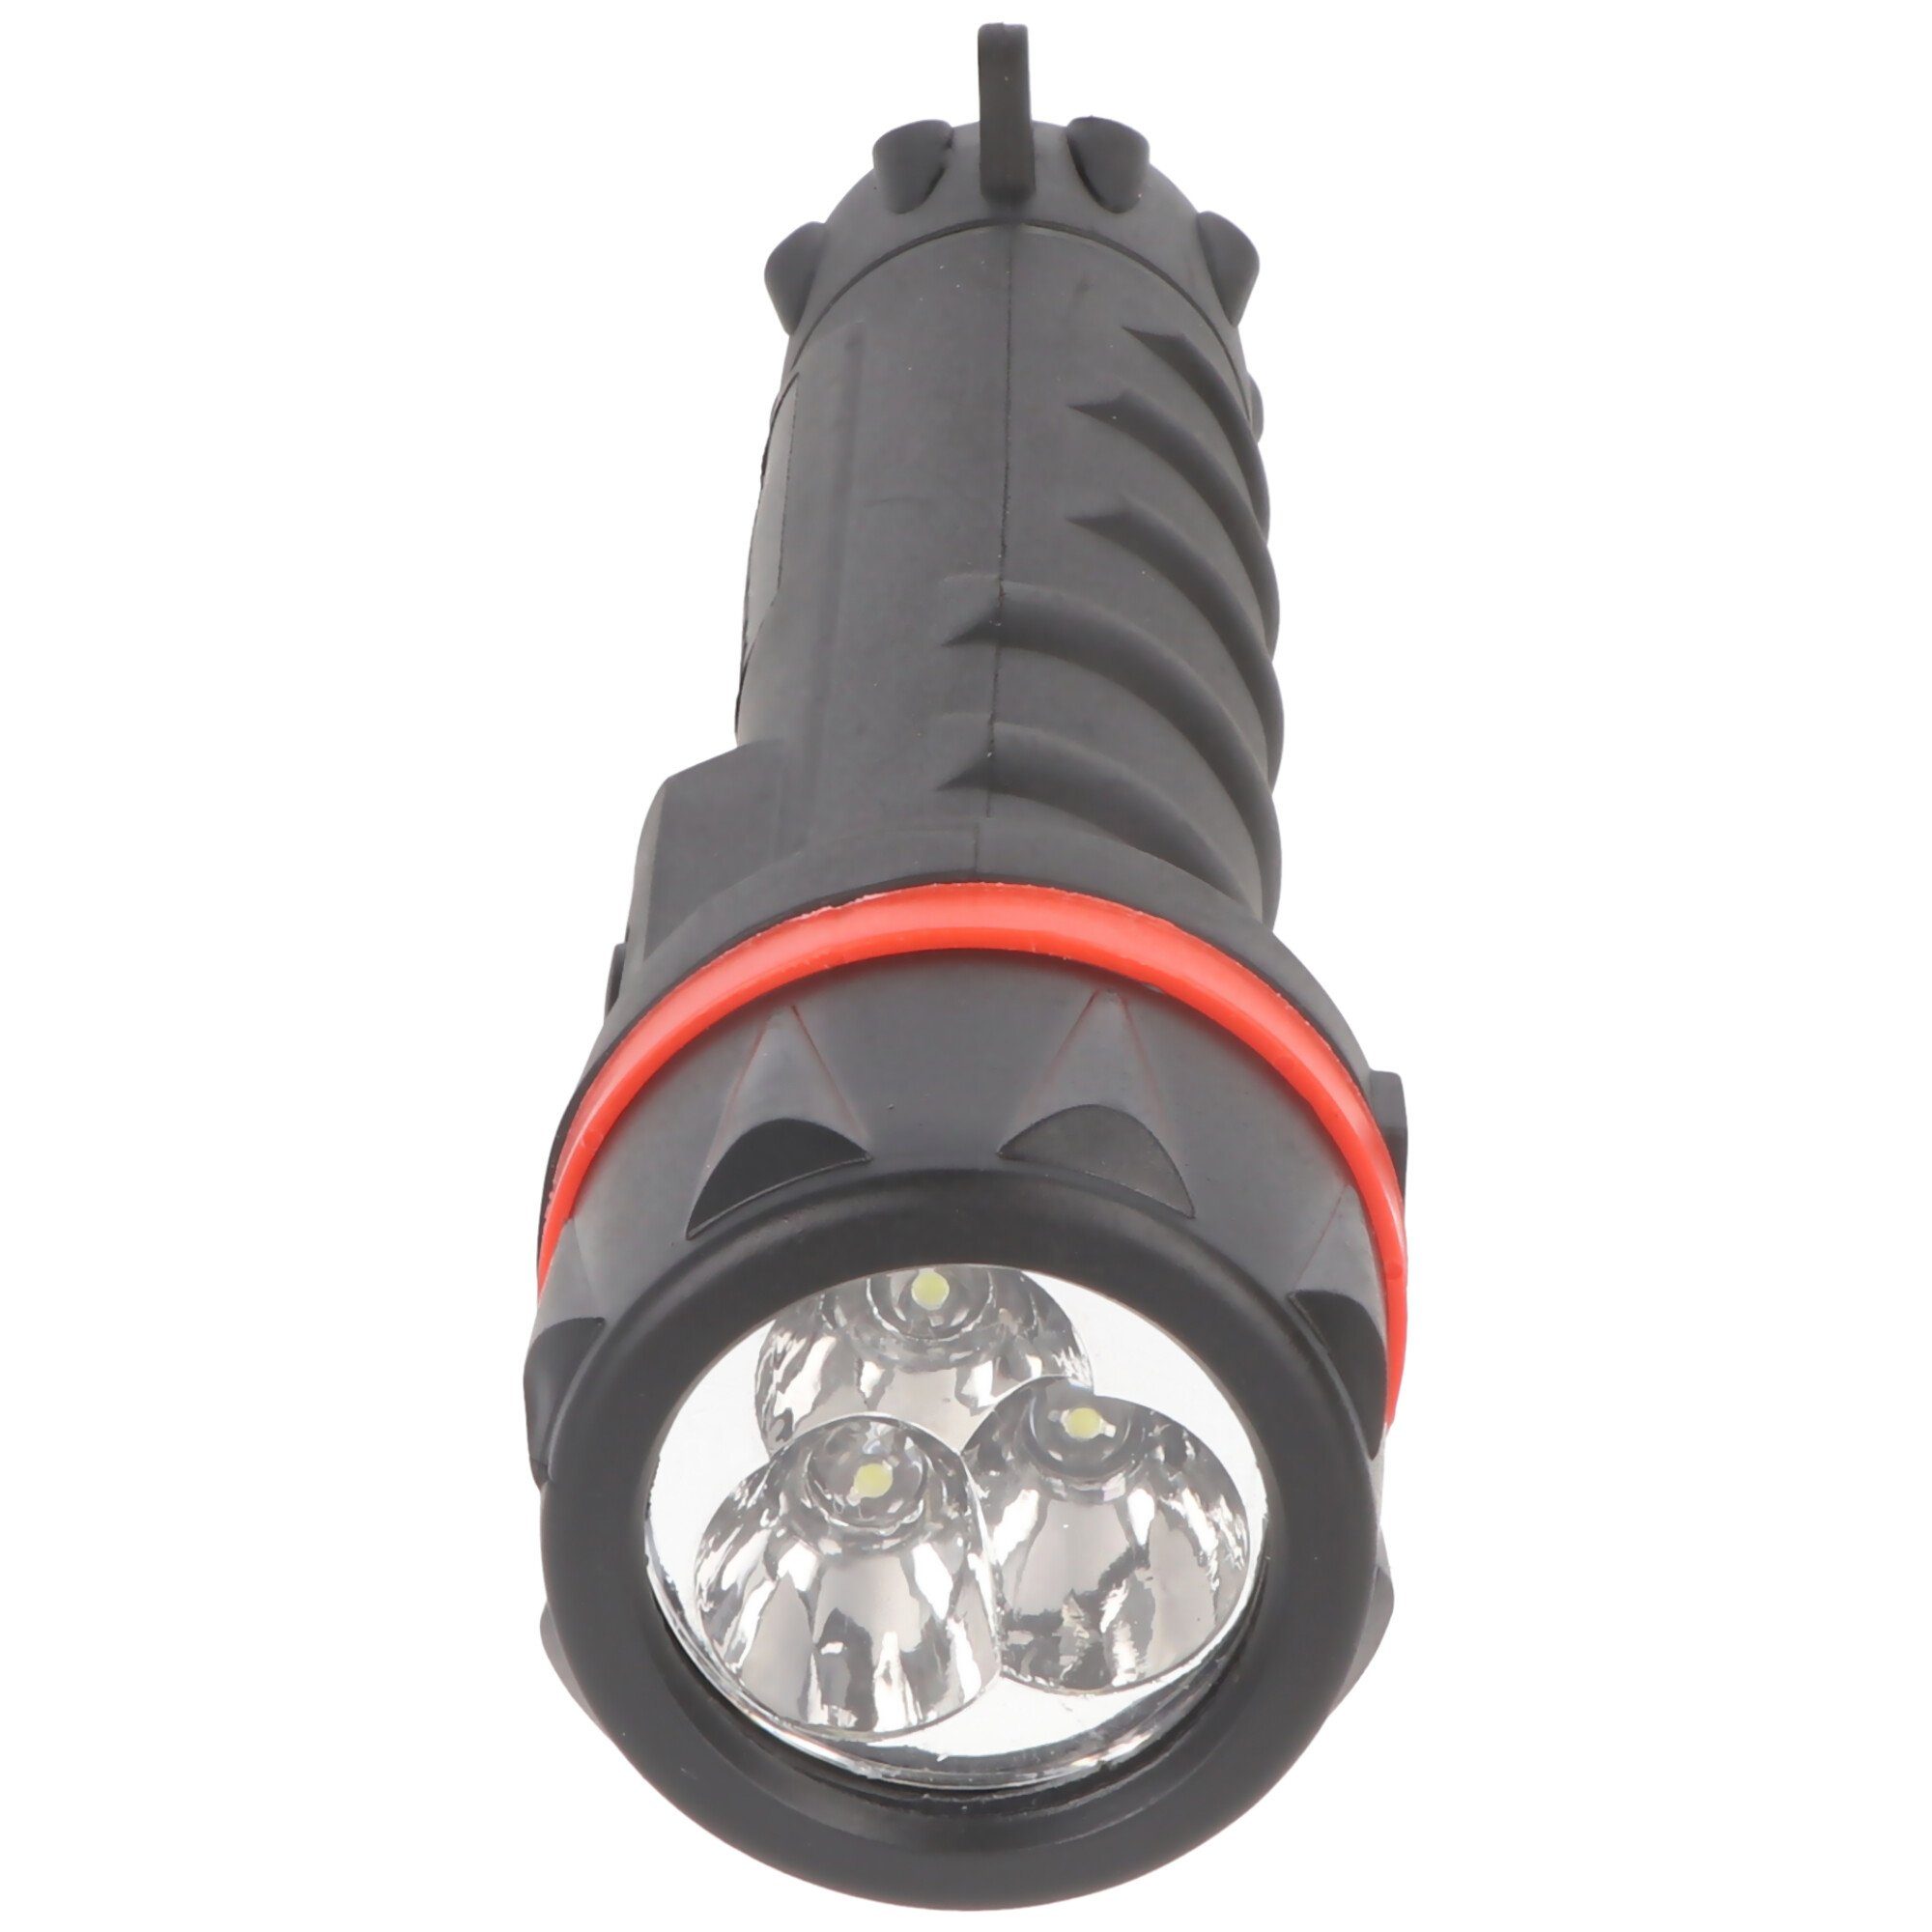 mit LED Tragesenkel LED 3 Velamp LEDs, Taschenlampe wasserdicht, Velamp Gummi-Taschenlampe,